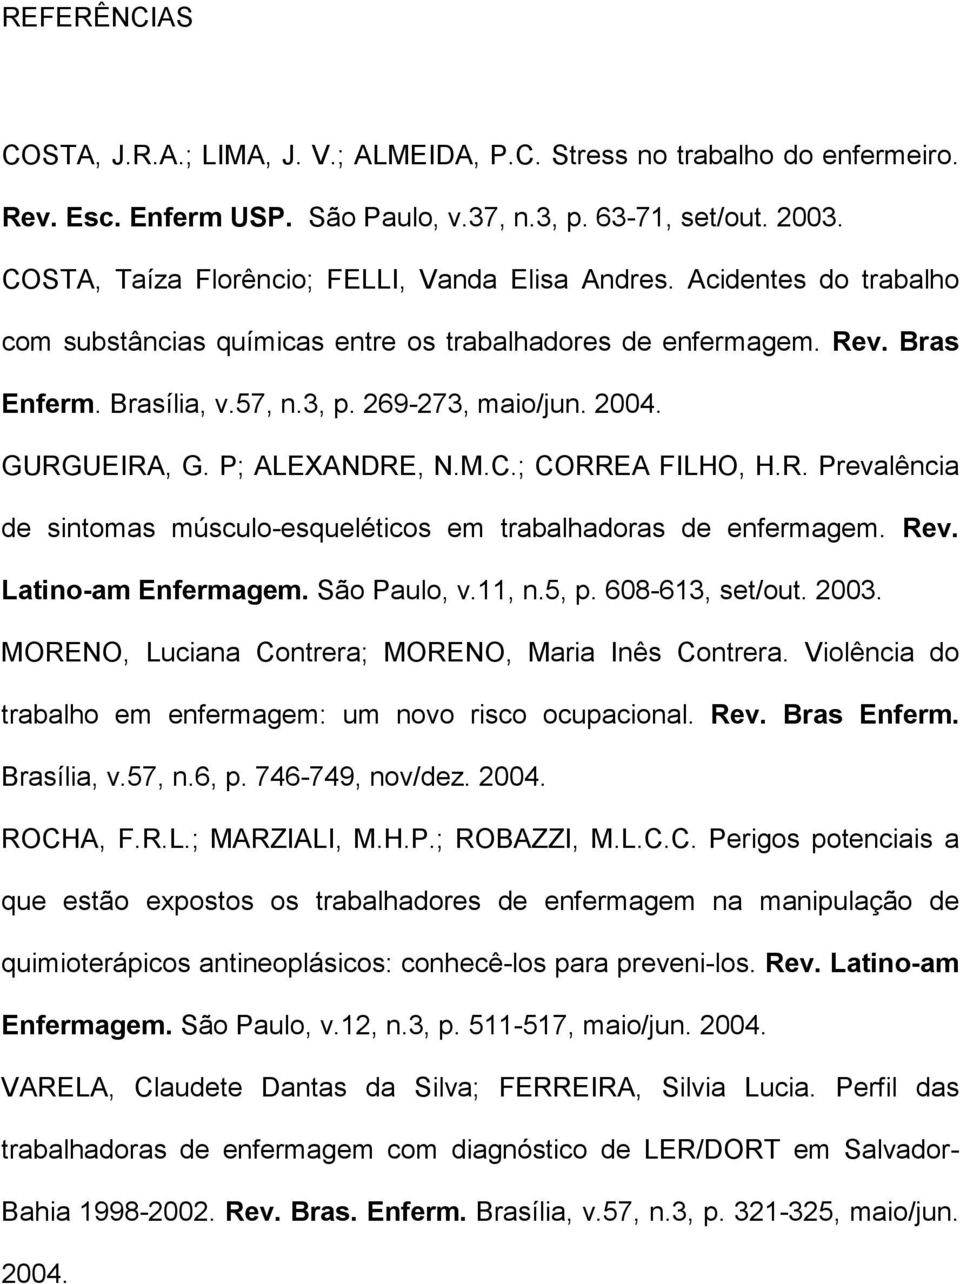 2004. GURGUEIRA, G. P; ALEXANDRE, N.M.C.; CORREA FILHO, H.R. Prevalência de sintomas músculo-esqueléticos em trabalhadoras de enfermagem. Rev. Latino-am Enfermagem. São Paulo, v.11, n.5, p.